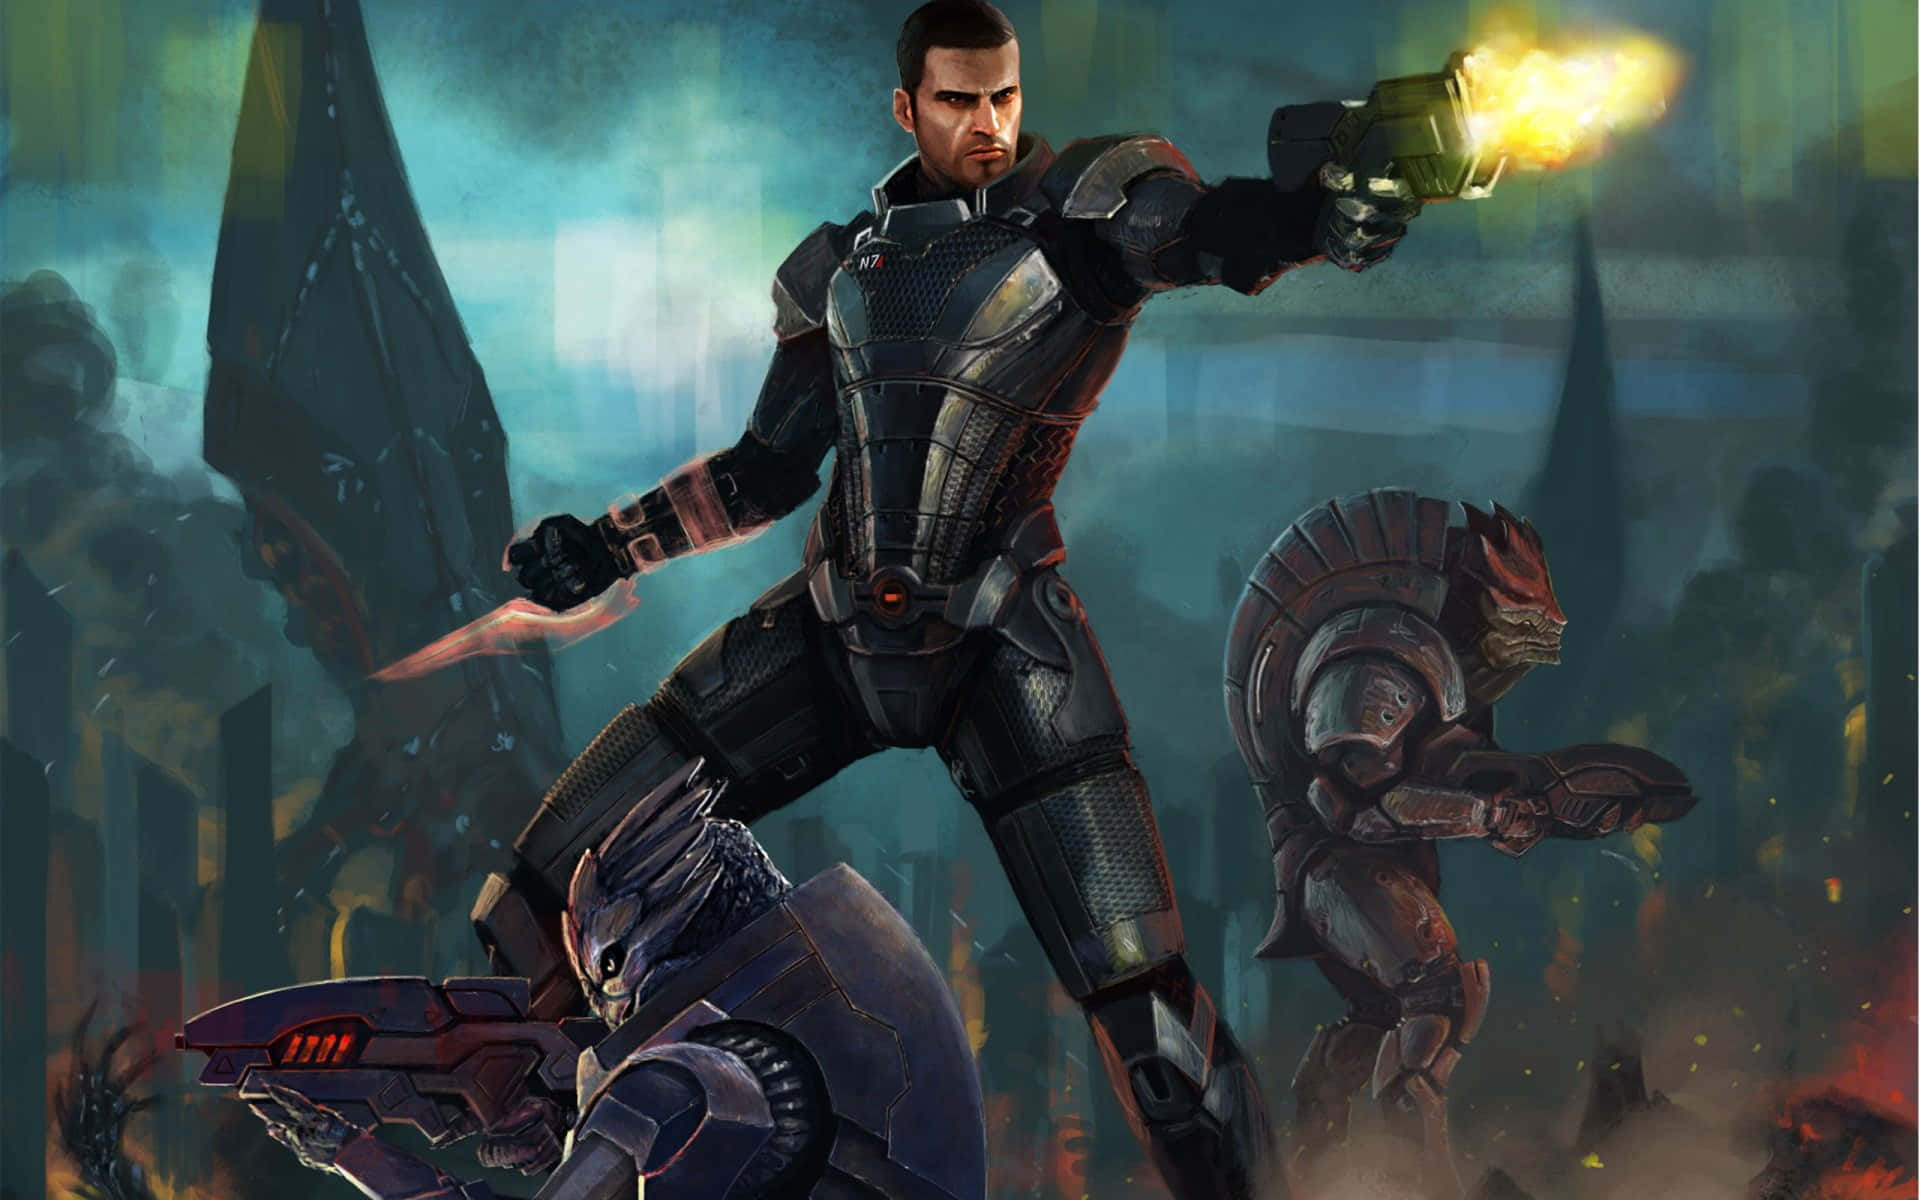 Urdnot Wrex the powerful Krogan warrior from Mass Effect Wallpaper